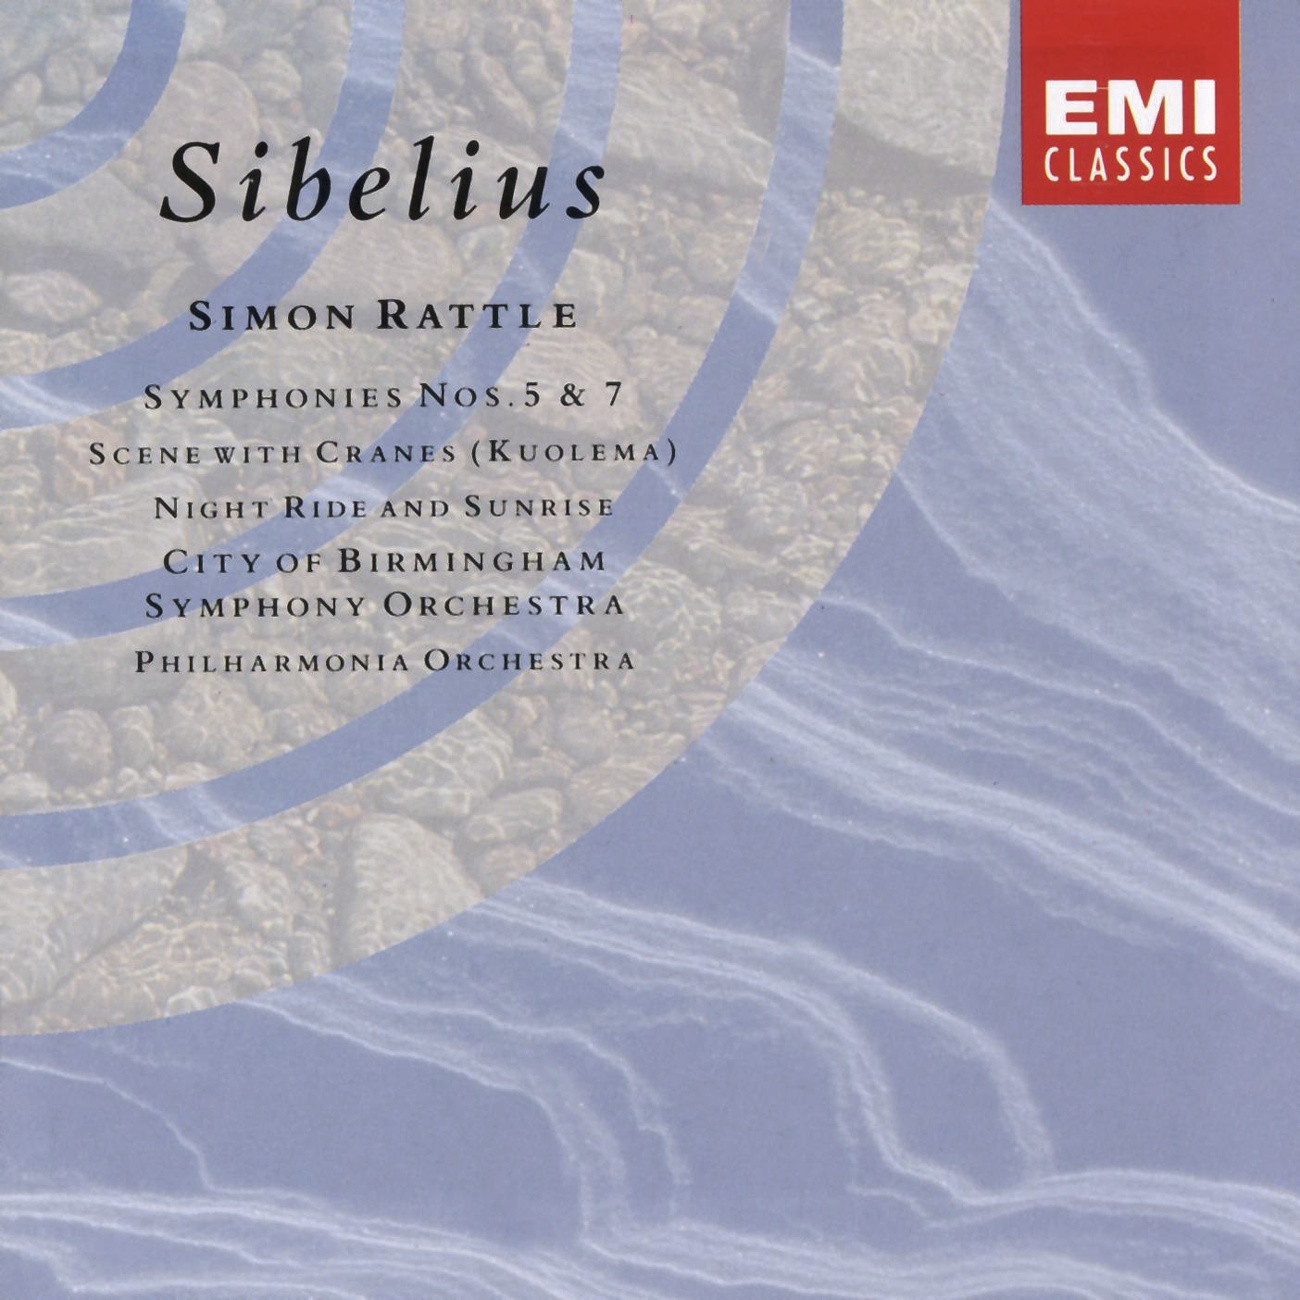 Sibelius: Symphony No. 7 in C, Op. 105: Un pochettino meno adagio-Vivacissimo - Adagio-